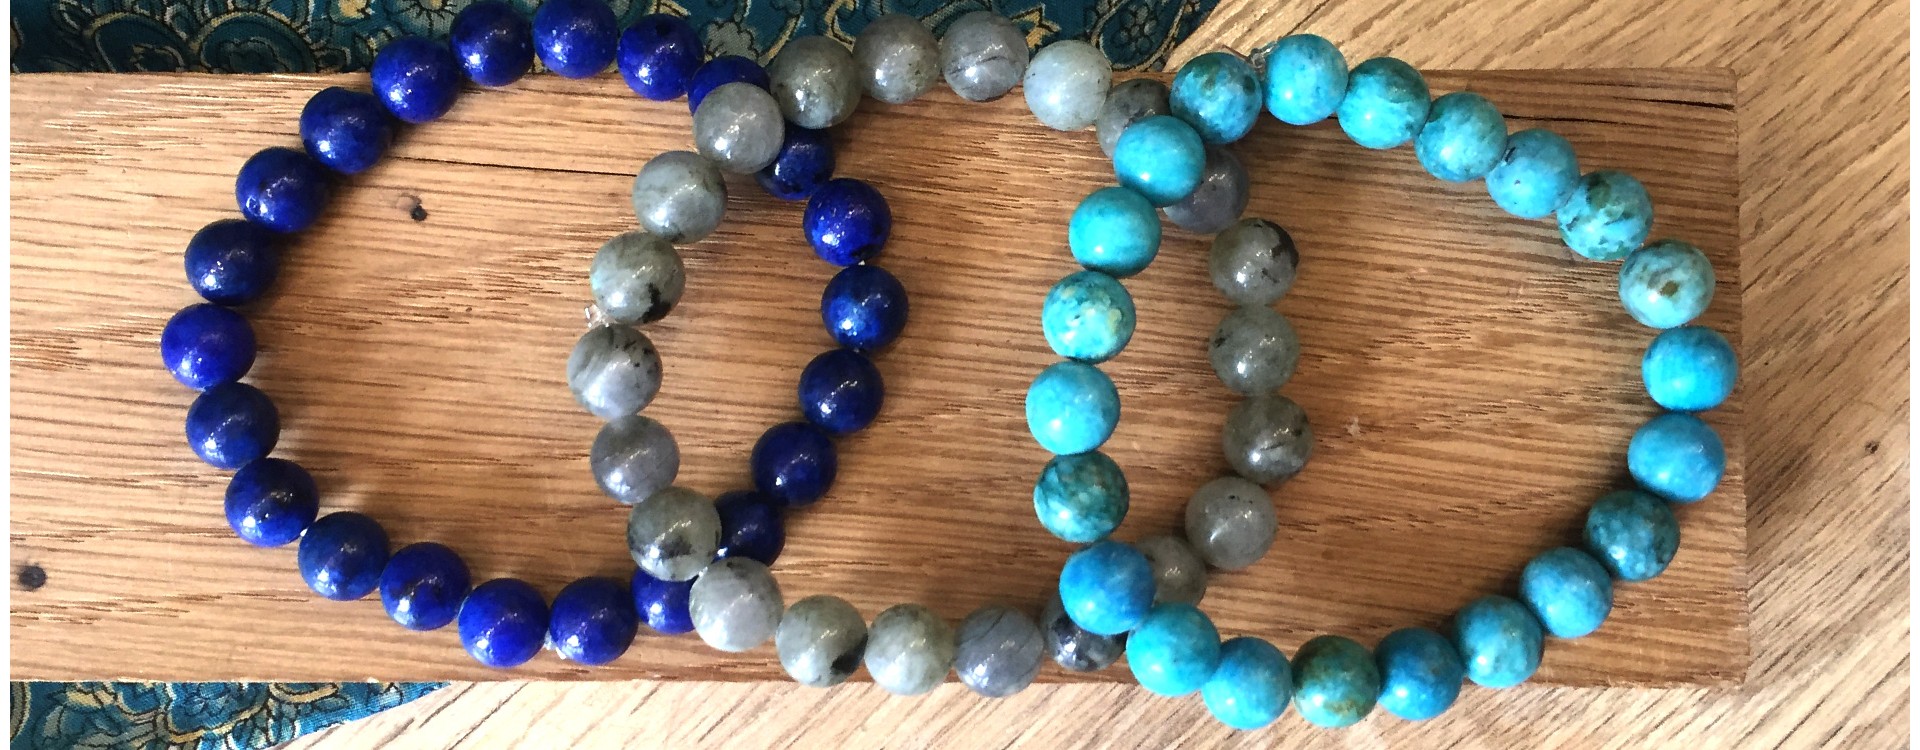 Lithothérapie : portez des bracelets en pierre ! - Mosaik bijoux indiens